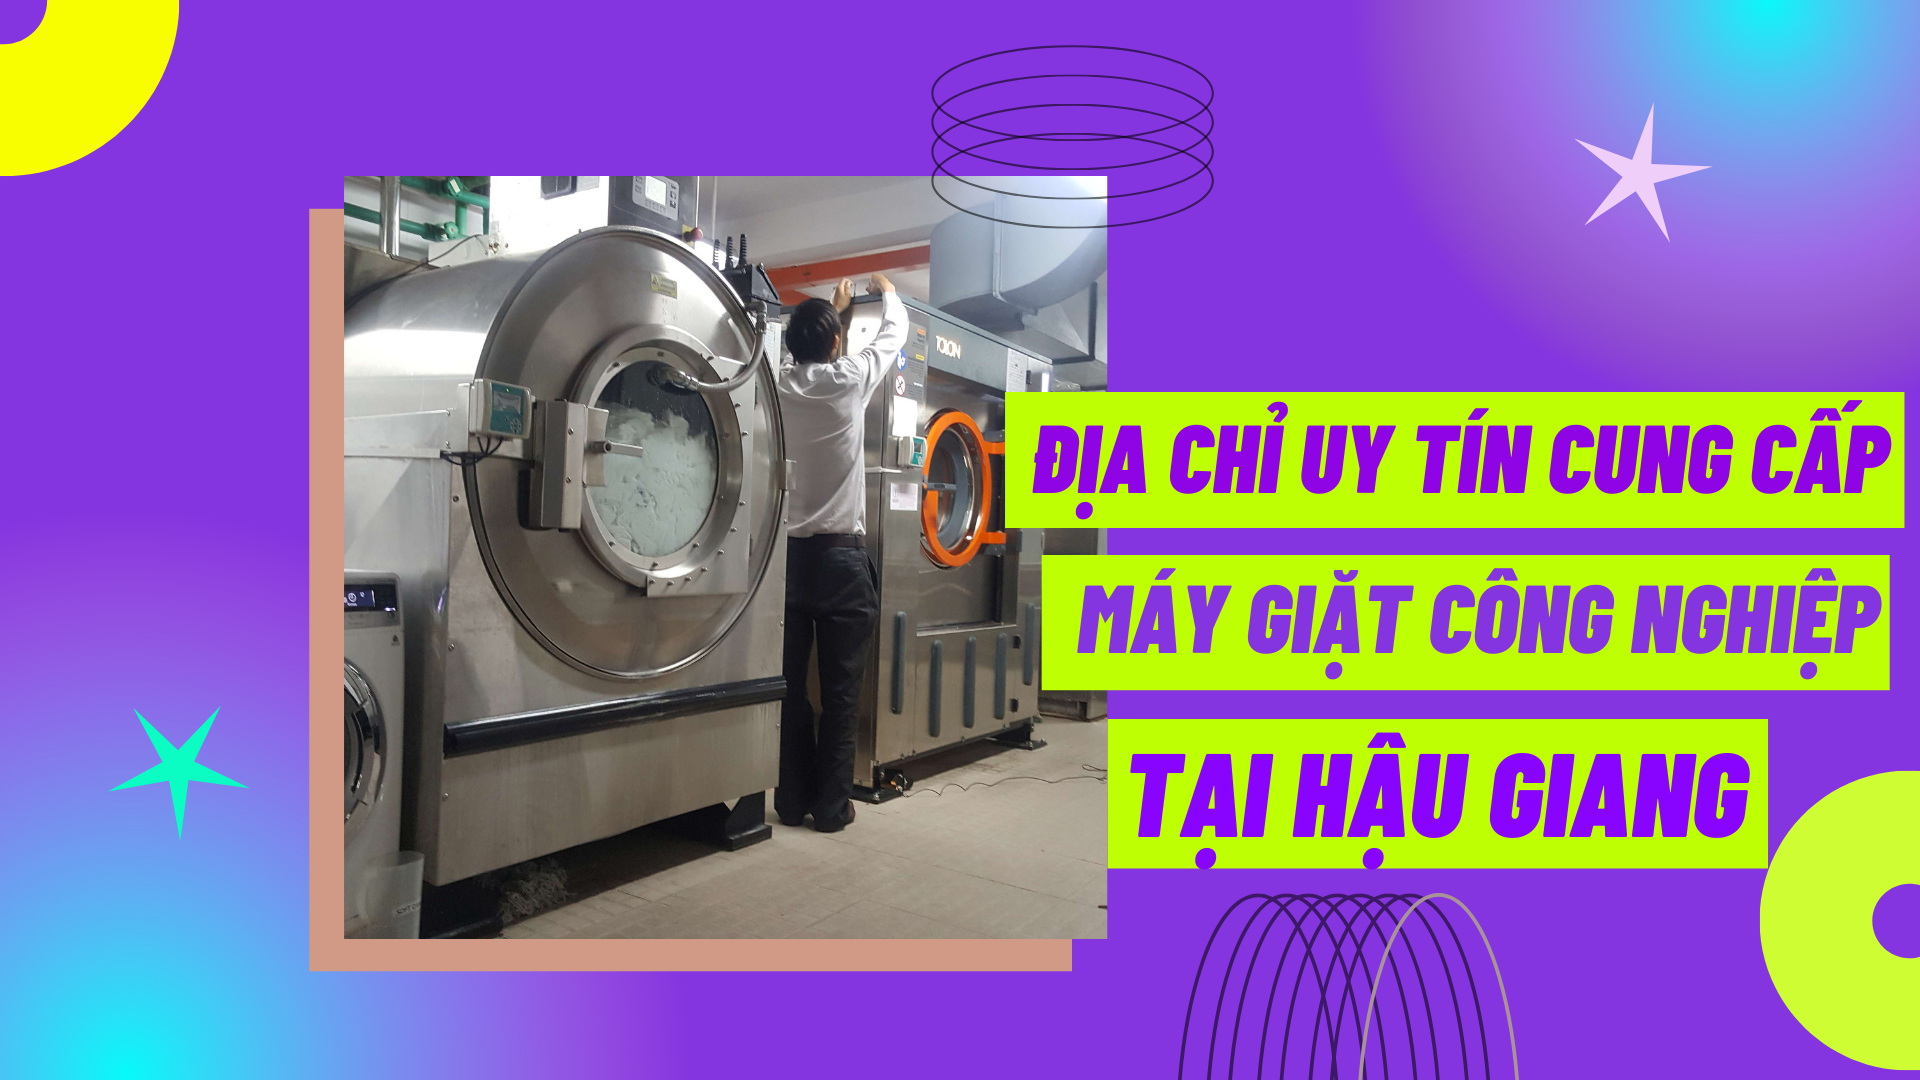 Địa chỉ uy tín cung cấp máy giặt công nghiệp tại Hậu Giang